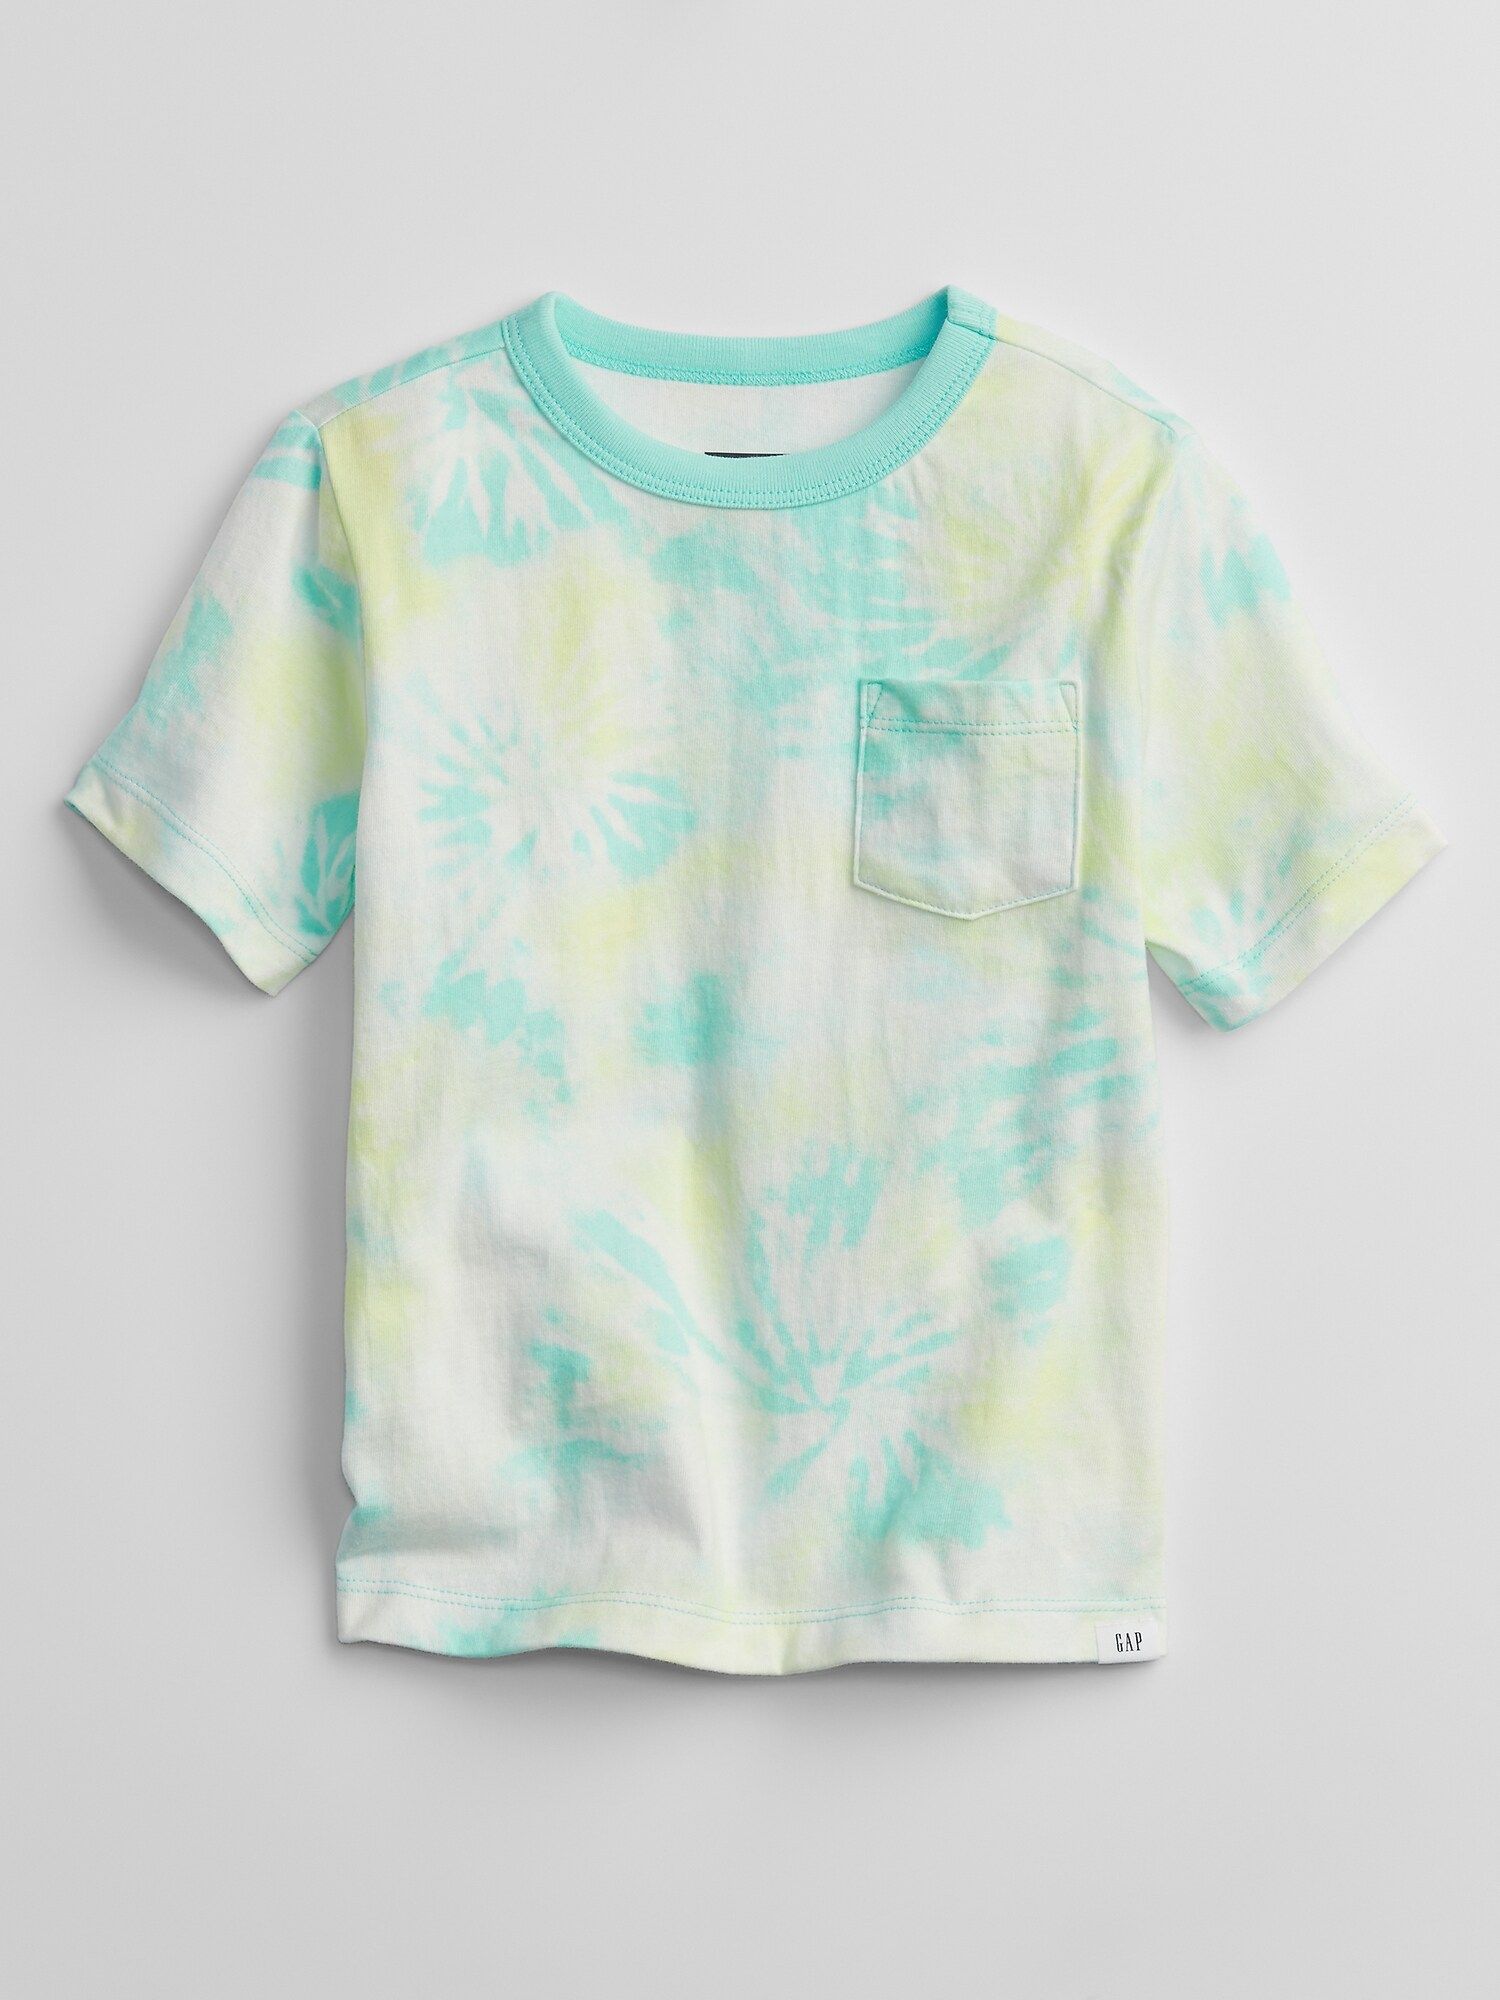 GAP barevné dětské tričko mix and match t-shirt - 3YRS - obrázek 1